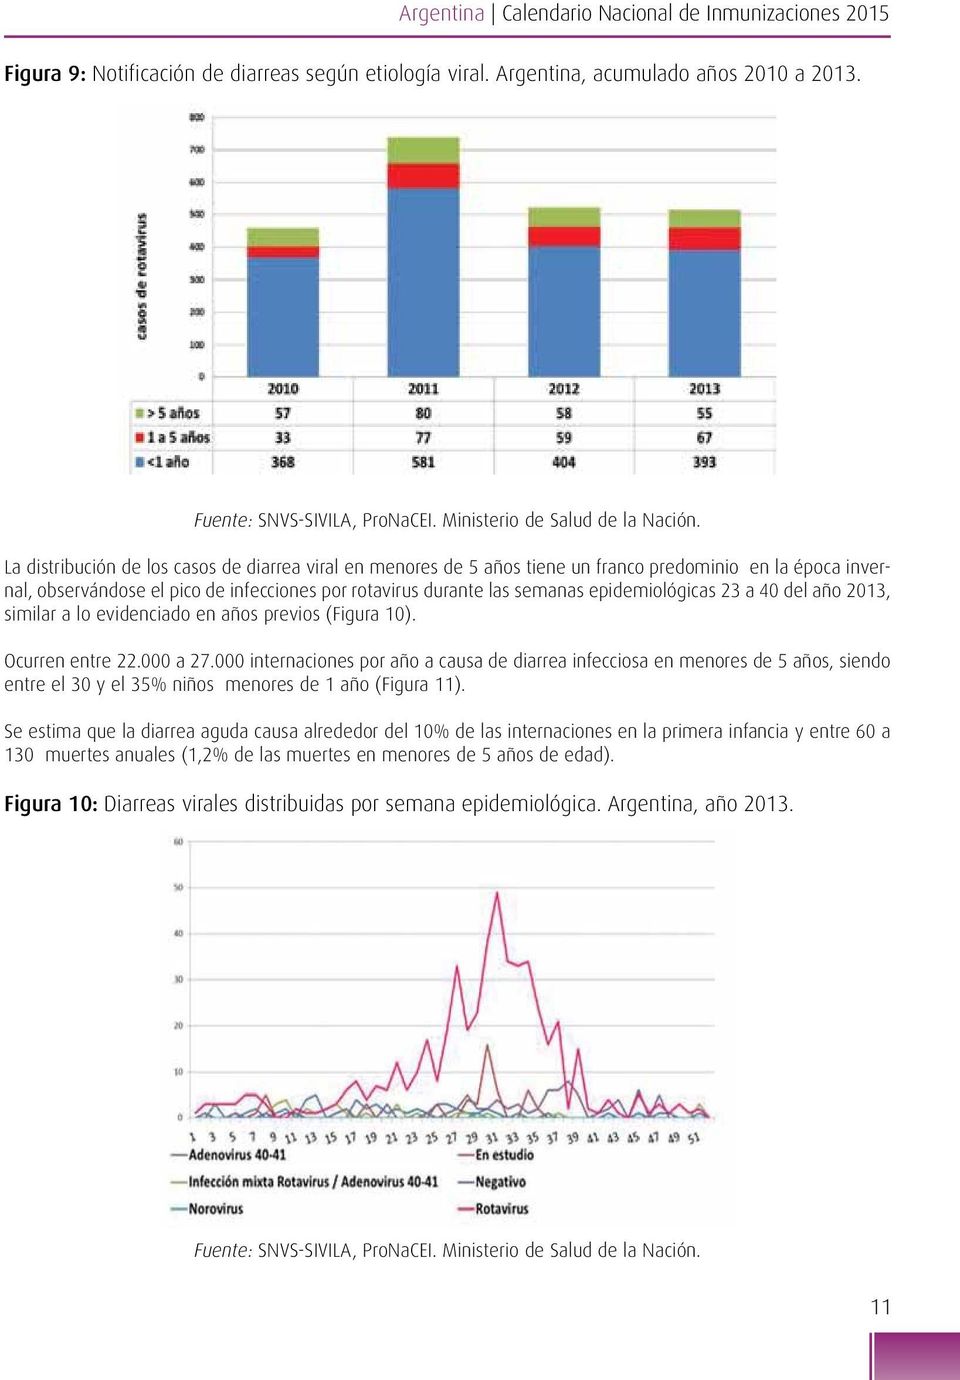 La distribución de los casos de diarrea viral en menores de 5 años tiene un franco predominio en la época invernal, observándose el pico de infecciones por rotavirus durante las semanas